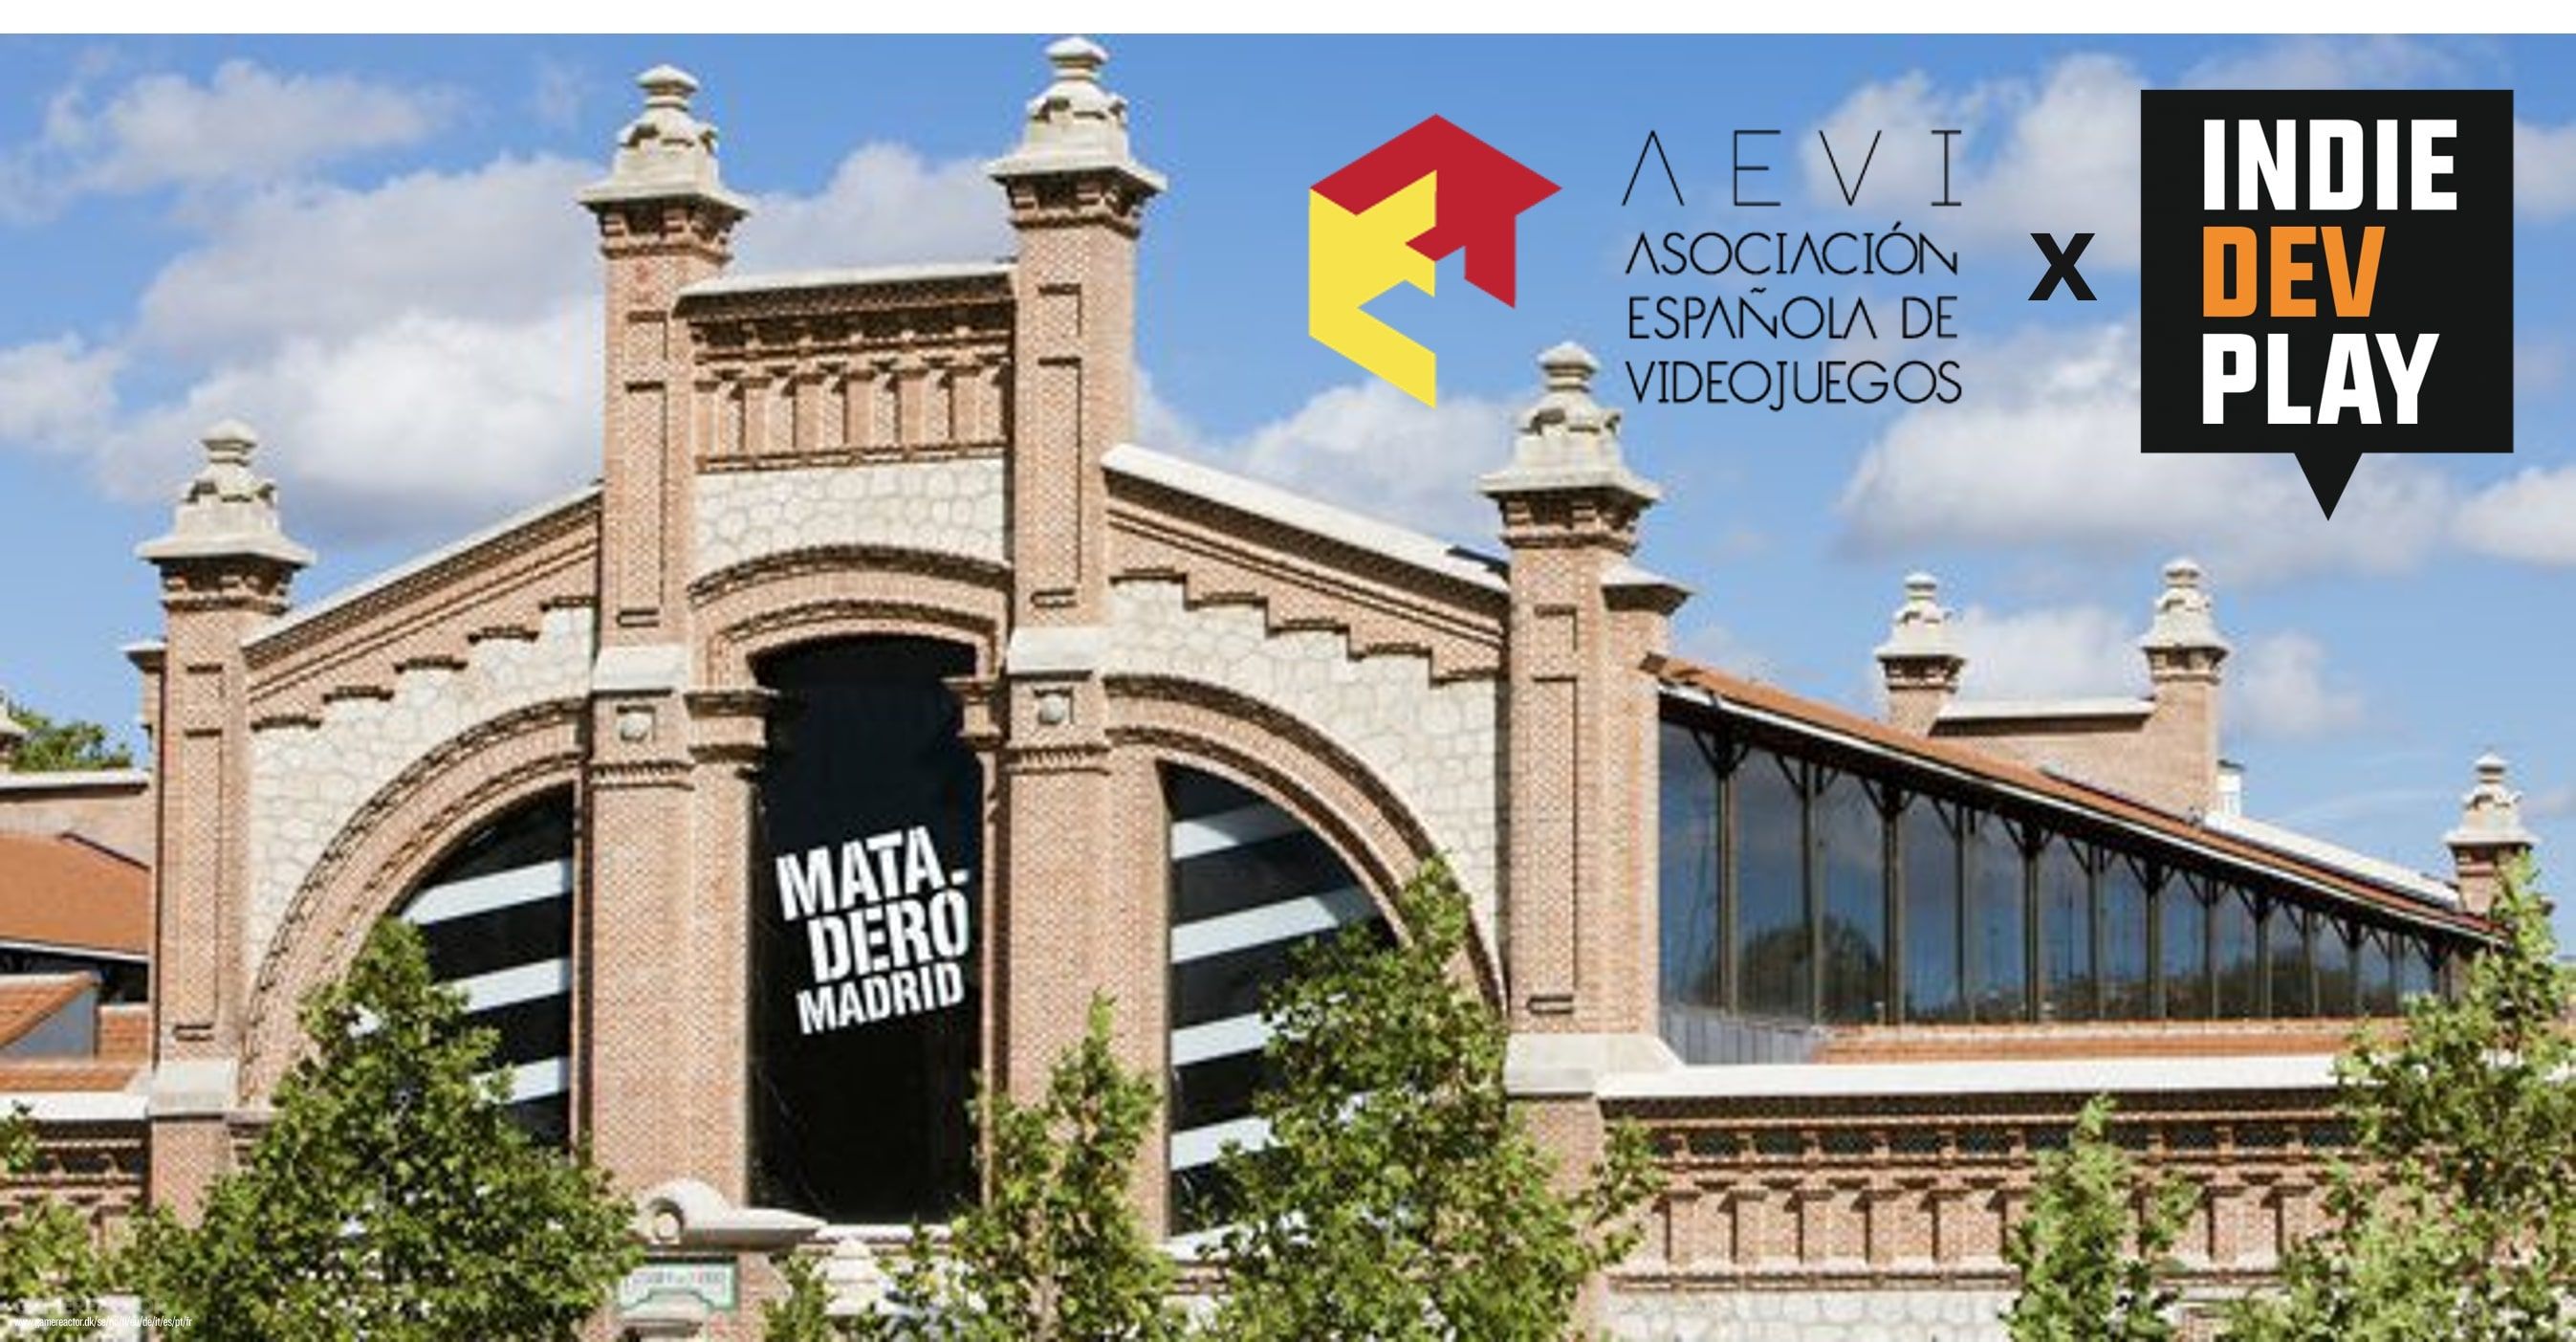 Mad Games Show celebrará su primera edición del 14 al 15 de junio en Matadero (Casa del Libro) de Madrid